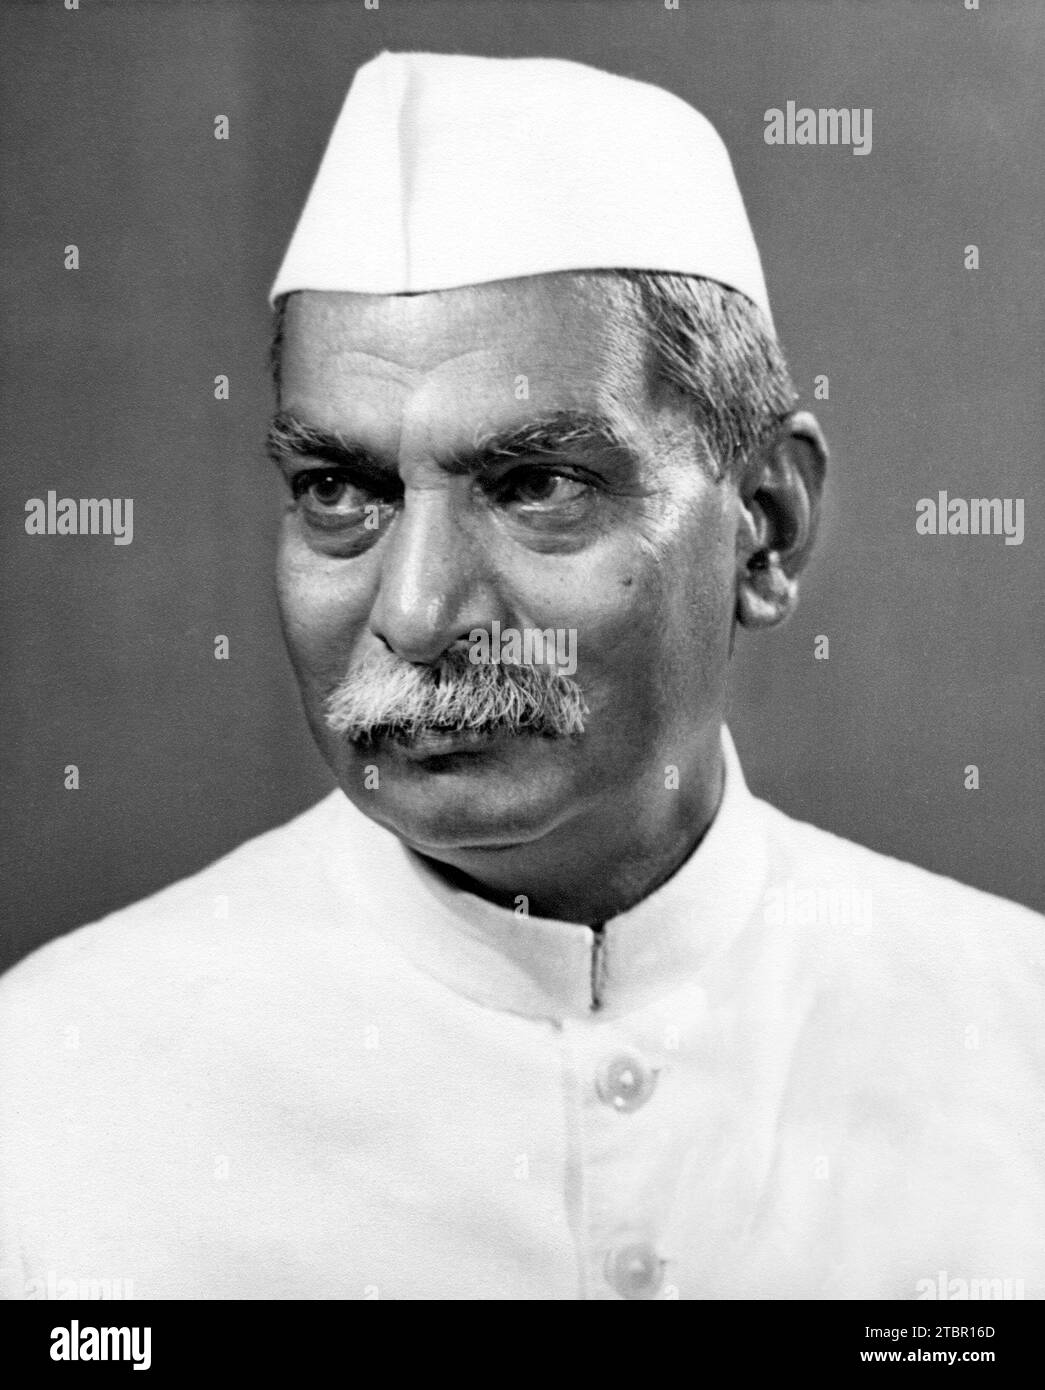 Rajendra Prasad, ehemaliger Präsident der Republik Indien. Dieses Bild wurde von Rajendra Prasad unterzeichnet und an Walter Nash (ehemaliger neuseeländischer Premierminister) i geschickt Stockfoto